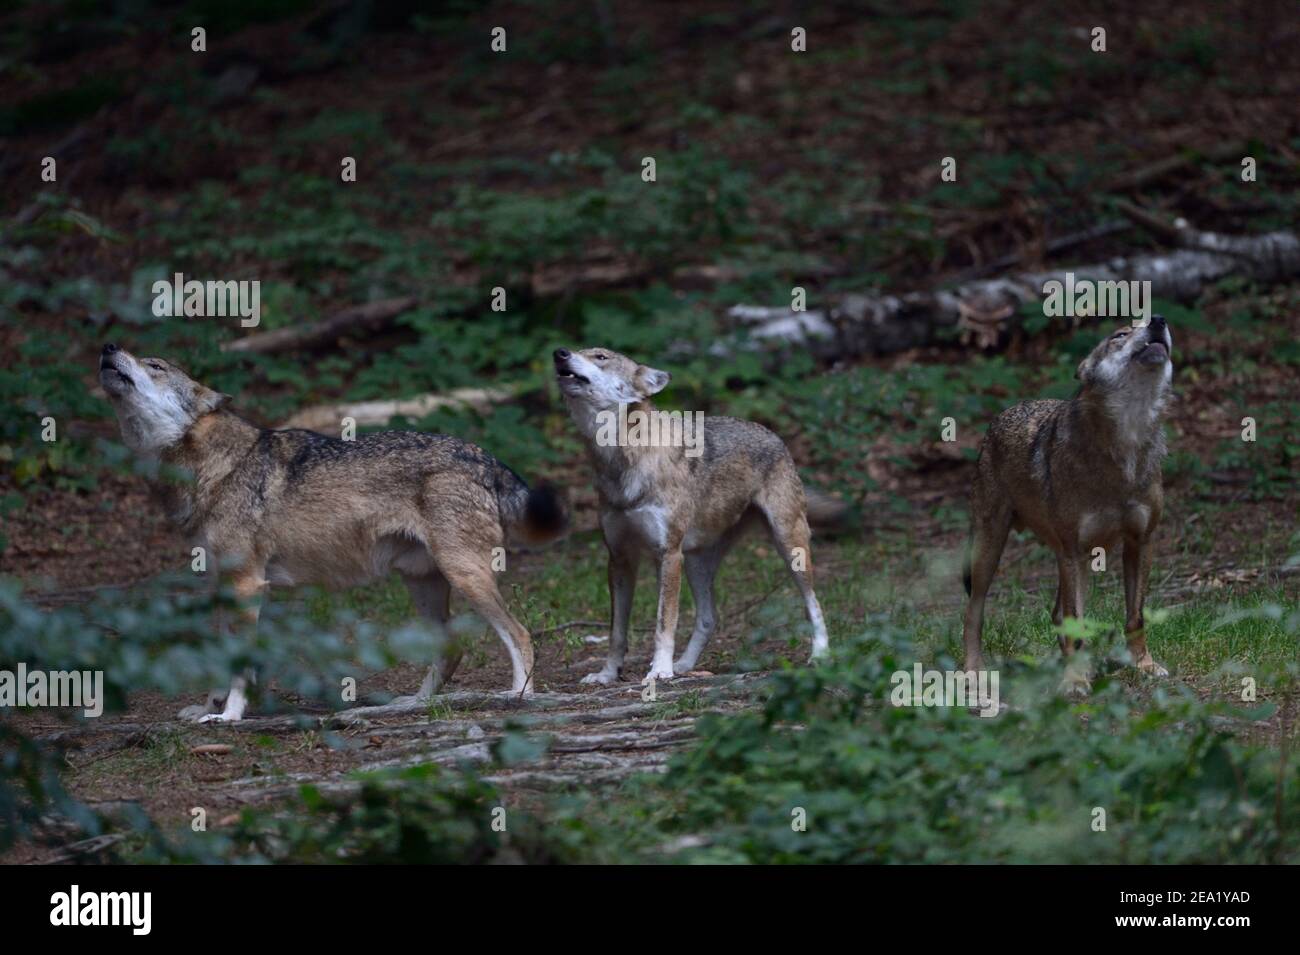 Lobos Eurasiáticos / Lobos grises ( Canis lupus ), paquete de lobos aulladores, paquete de lobos, búho de lobos, Europa. Foto de stock